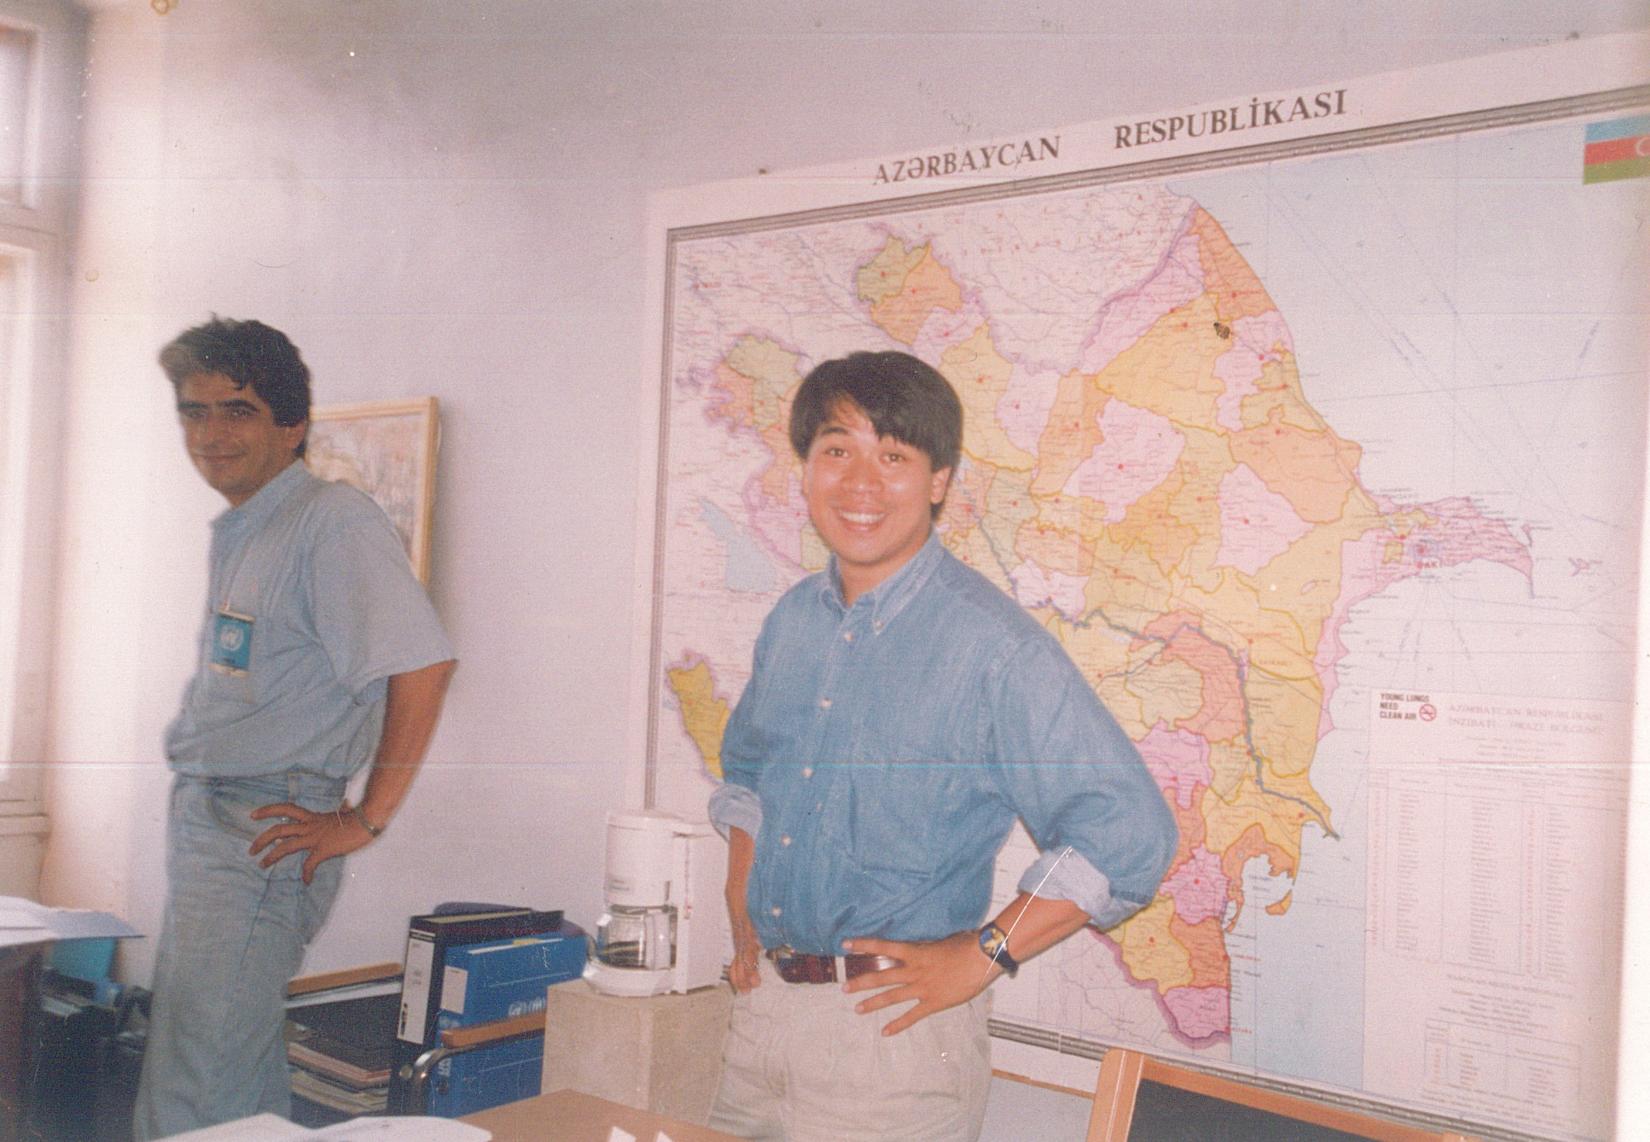 Vanno Noupech at UNHCR Azerbaijan Office in 1994